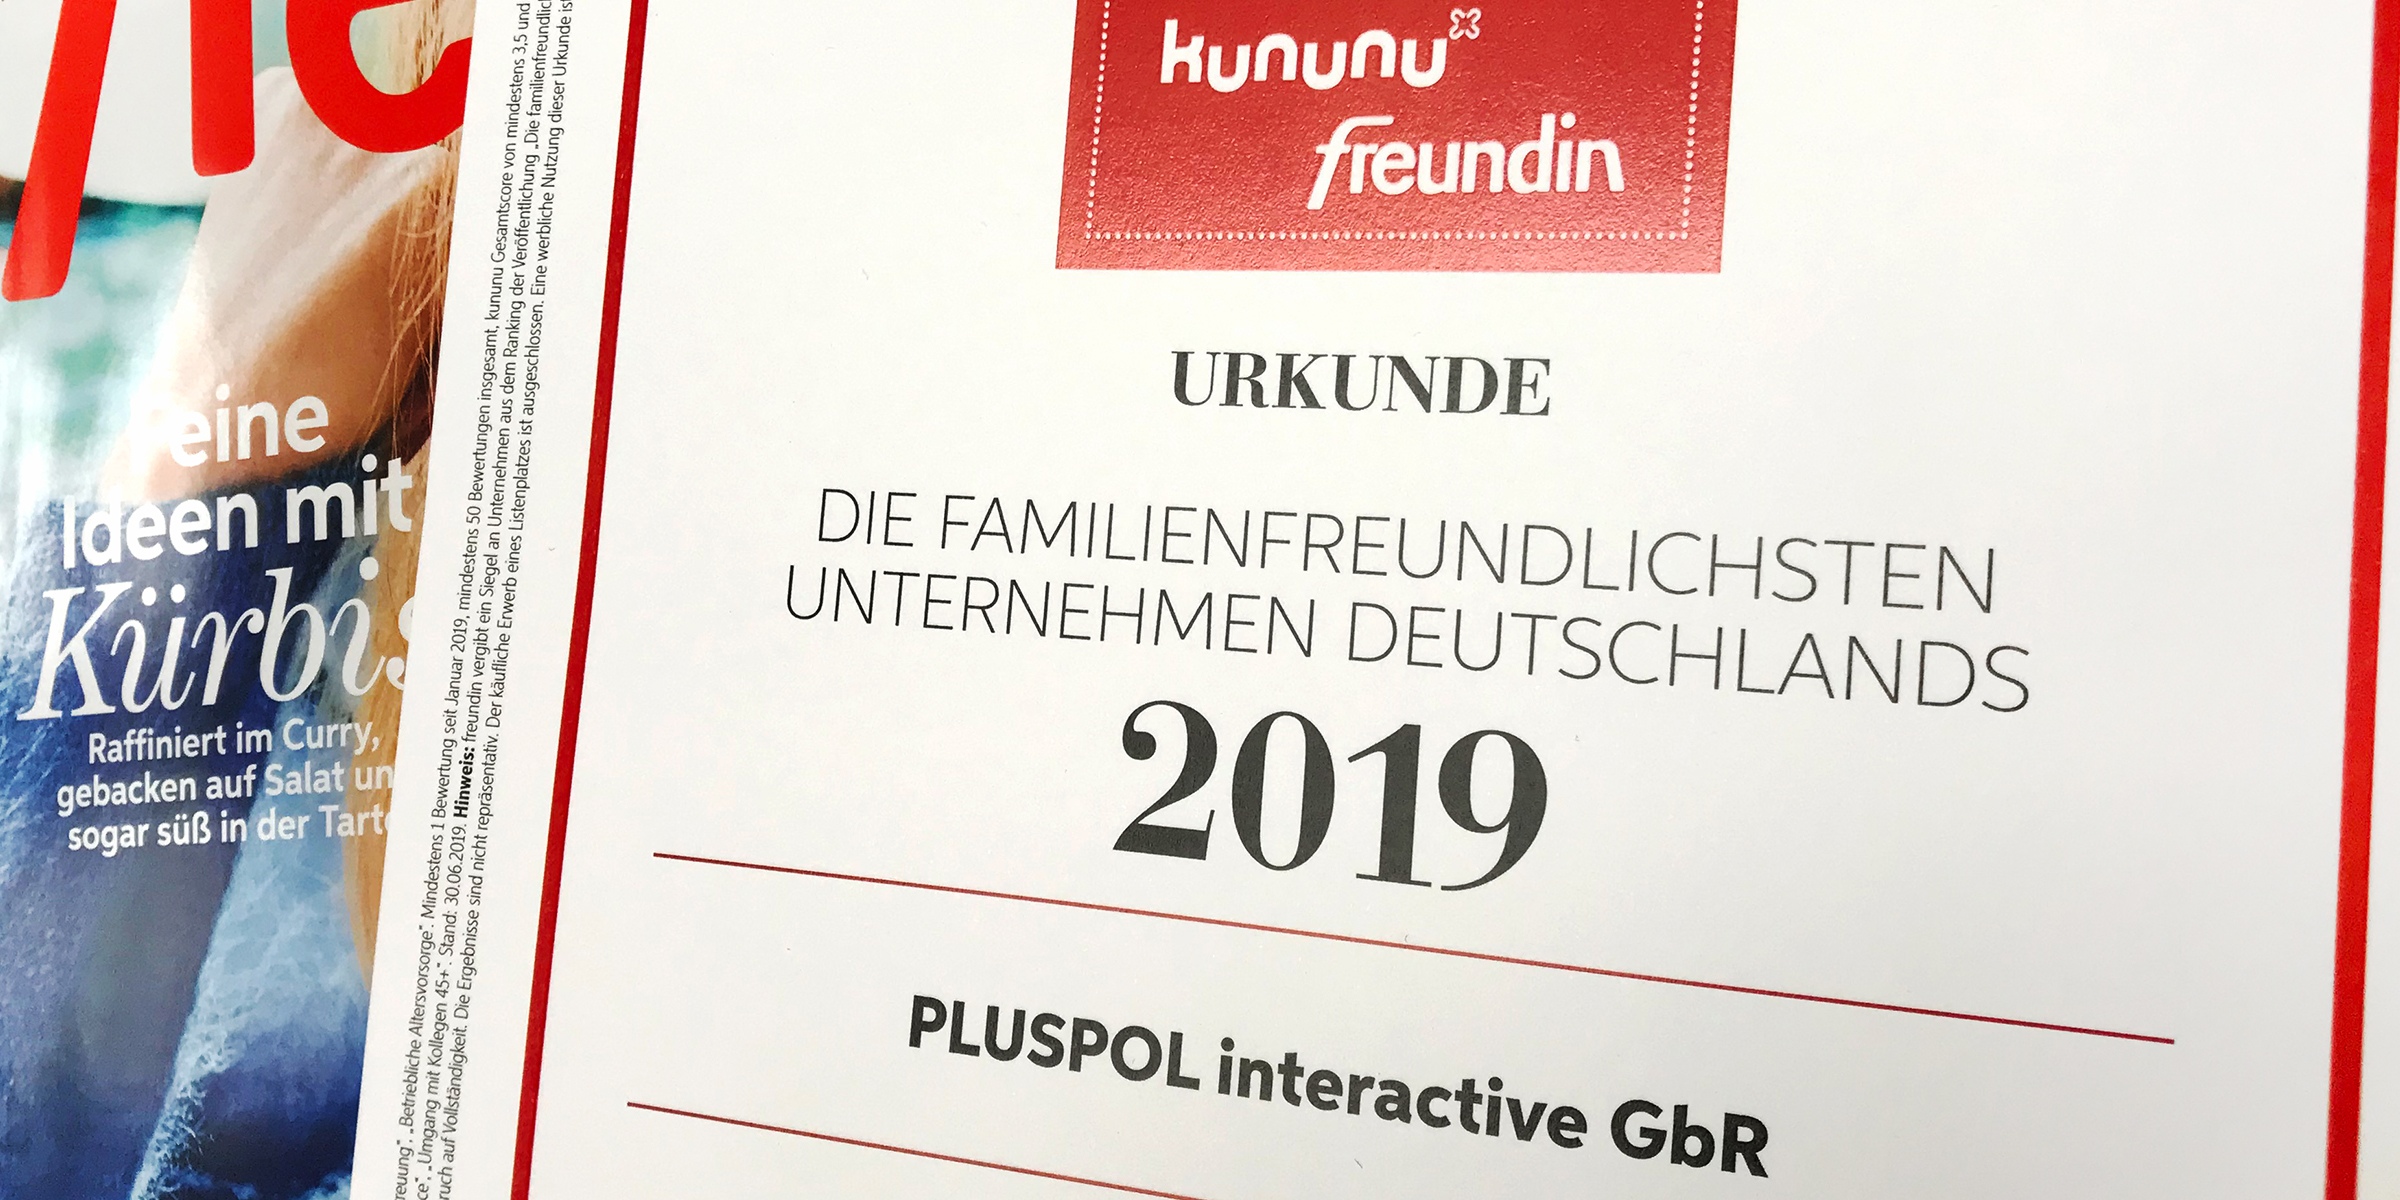 Ausgezeichnet! PLUSPOL interactive punktet unter den familienfreundlichsten Unternehmen Deutschlands